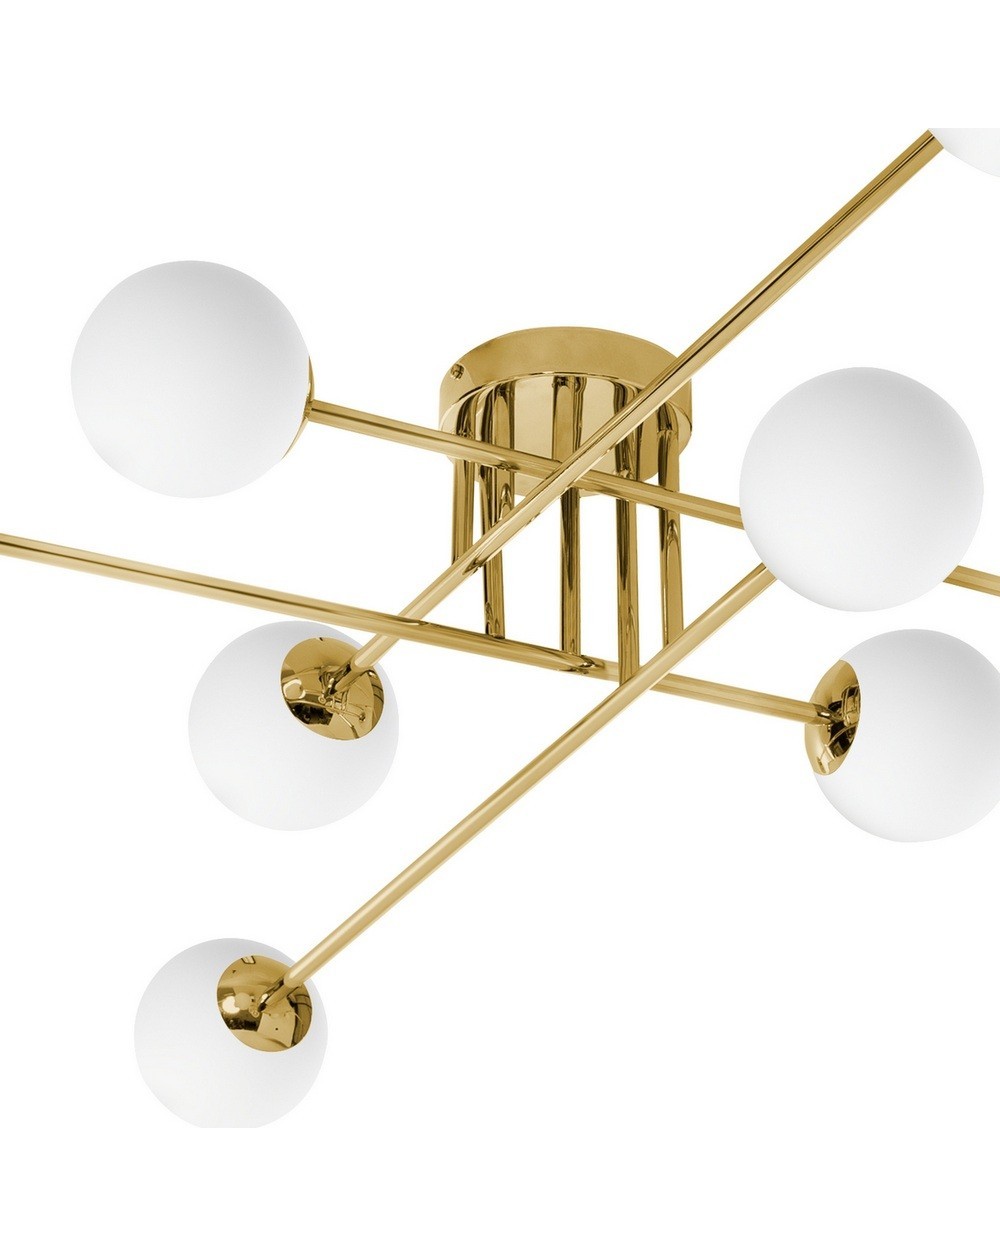 ASTRA 8 - Lampa sufitowa ośmiopunktowa złota